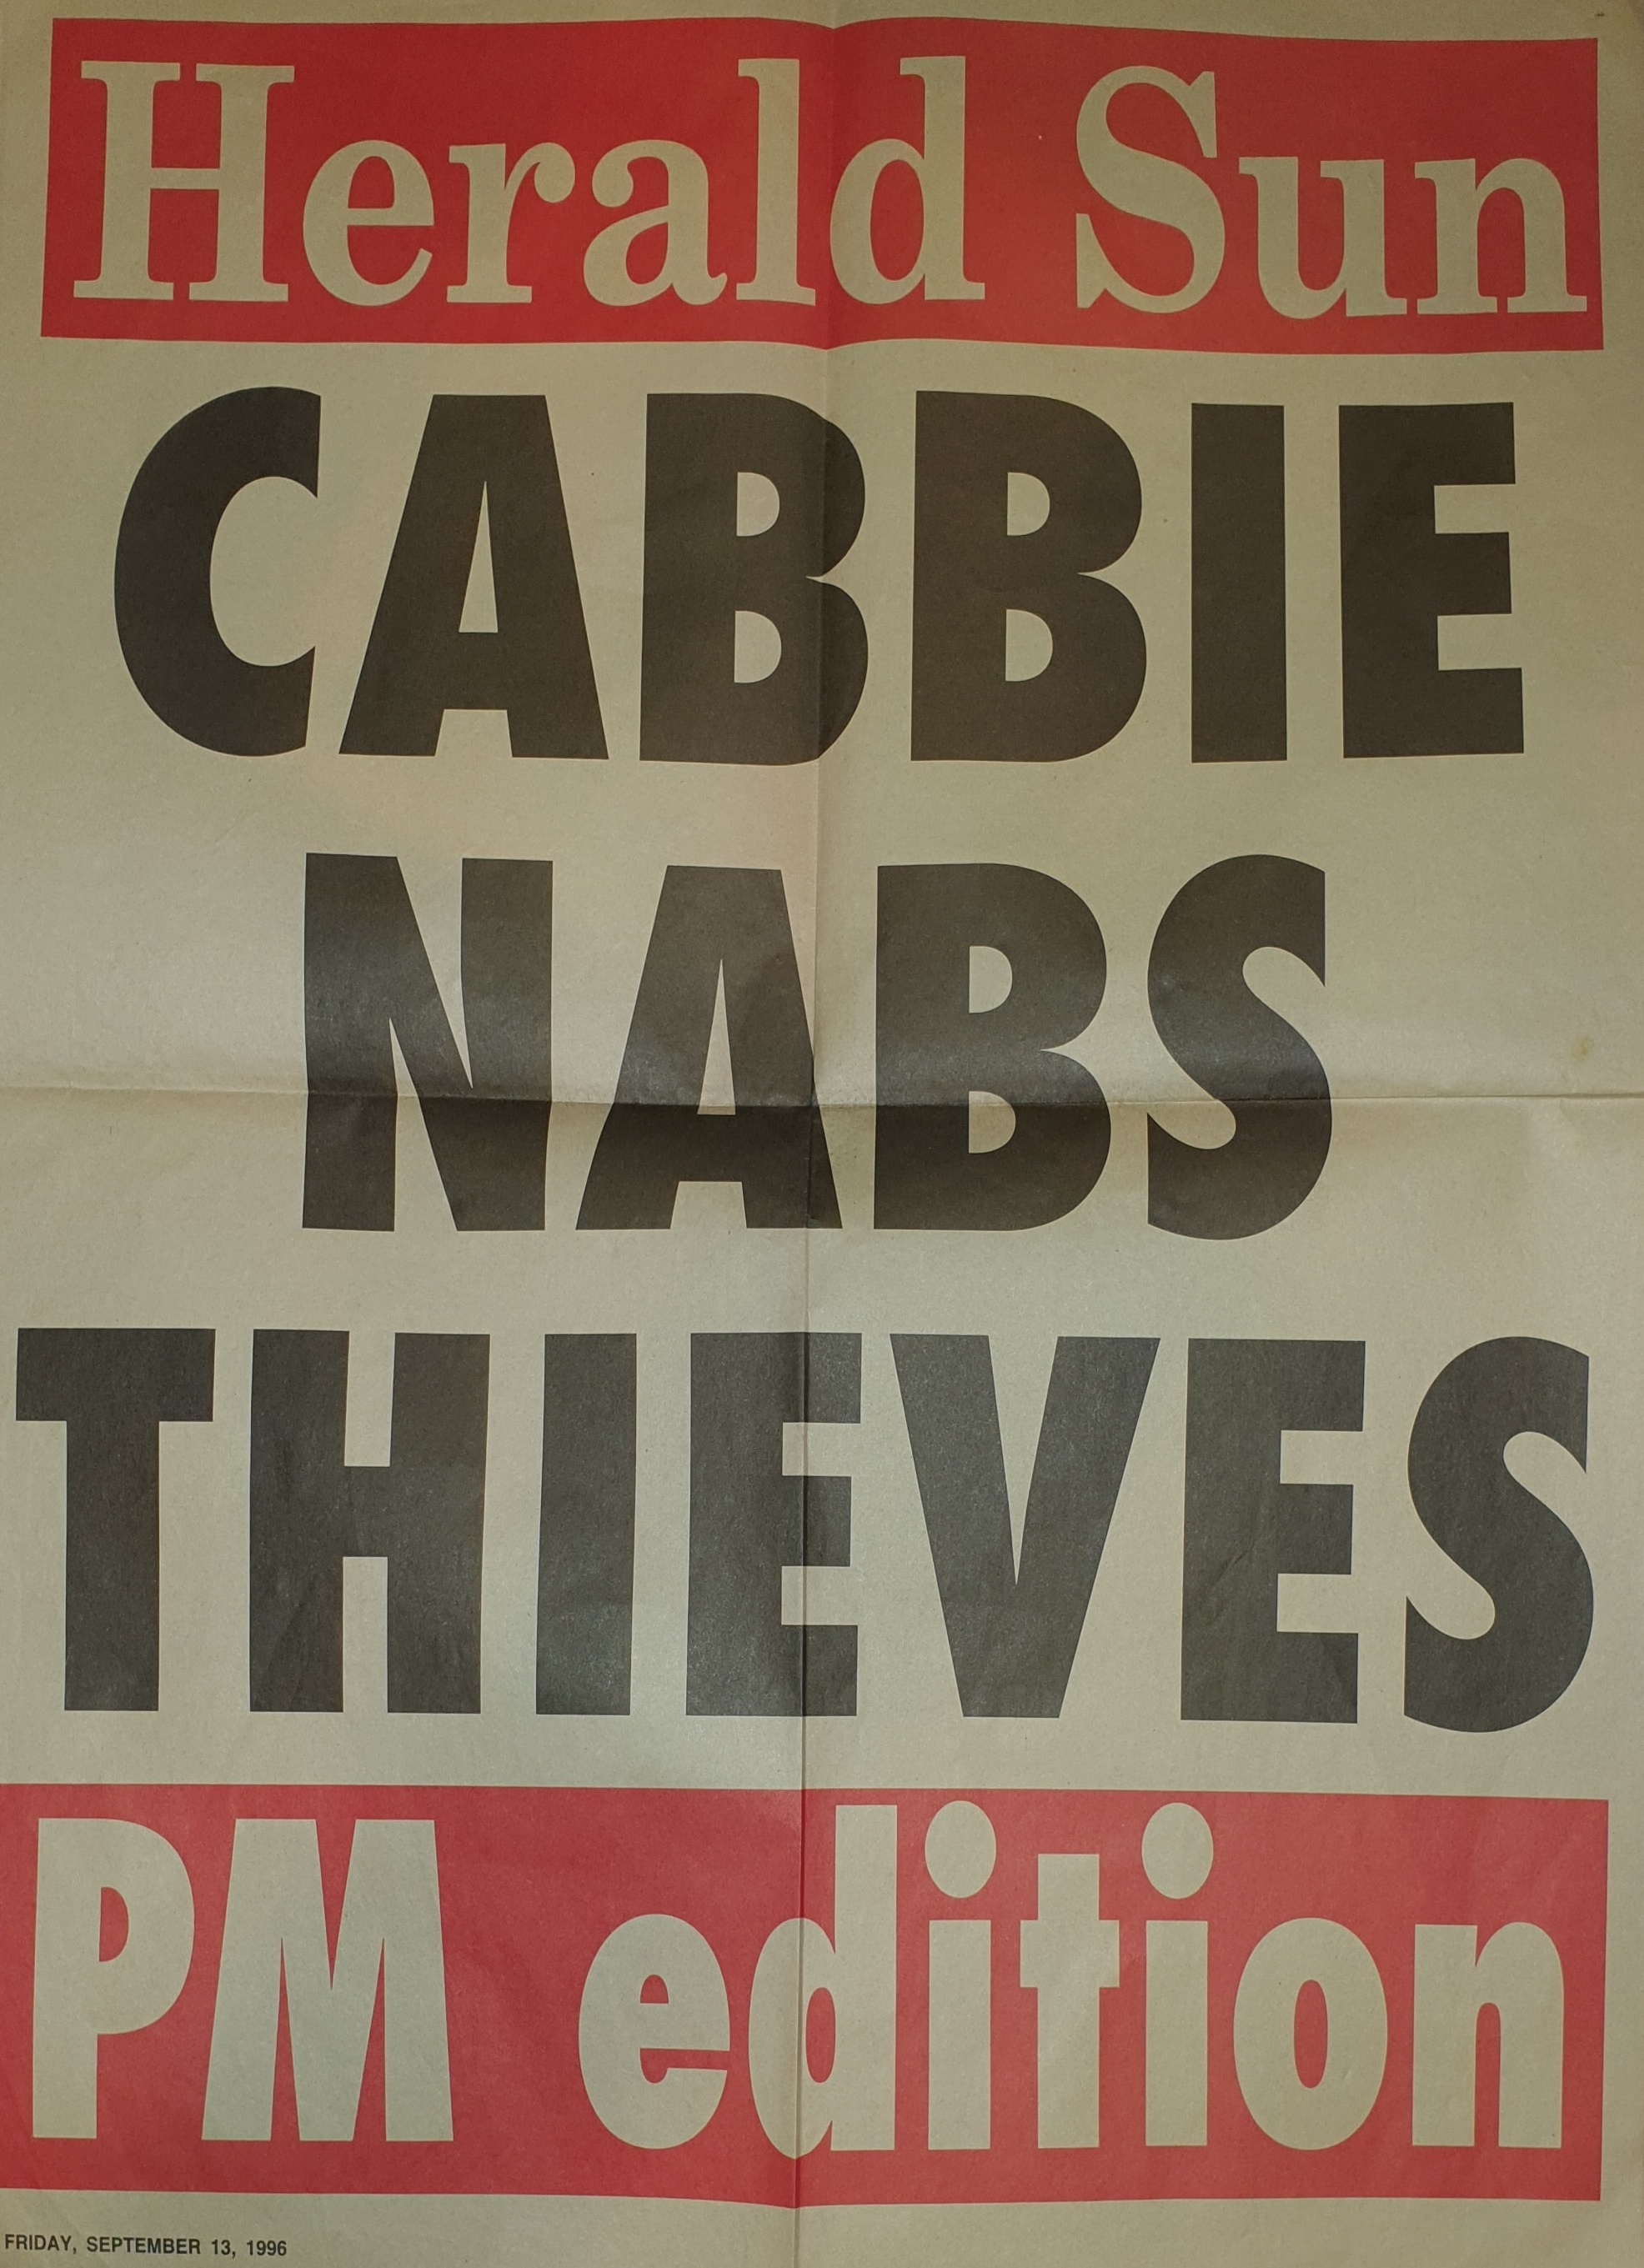 โปสเตอร์ในหนังสือพิมพ์ Herald Sun ที่เขียนว่า 'CABBIE NABS THIEVES'